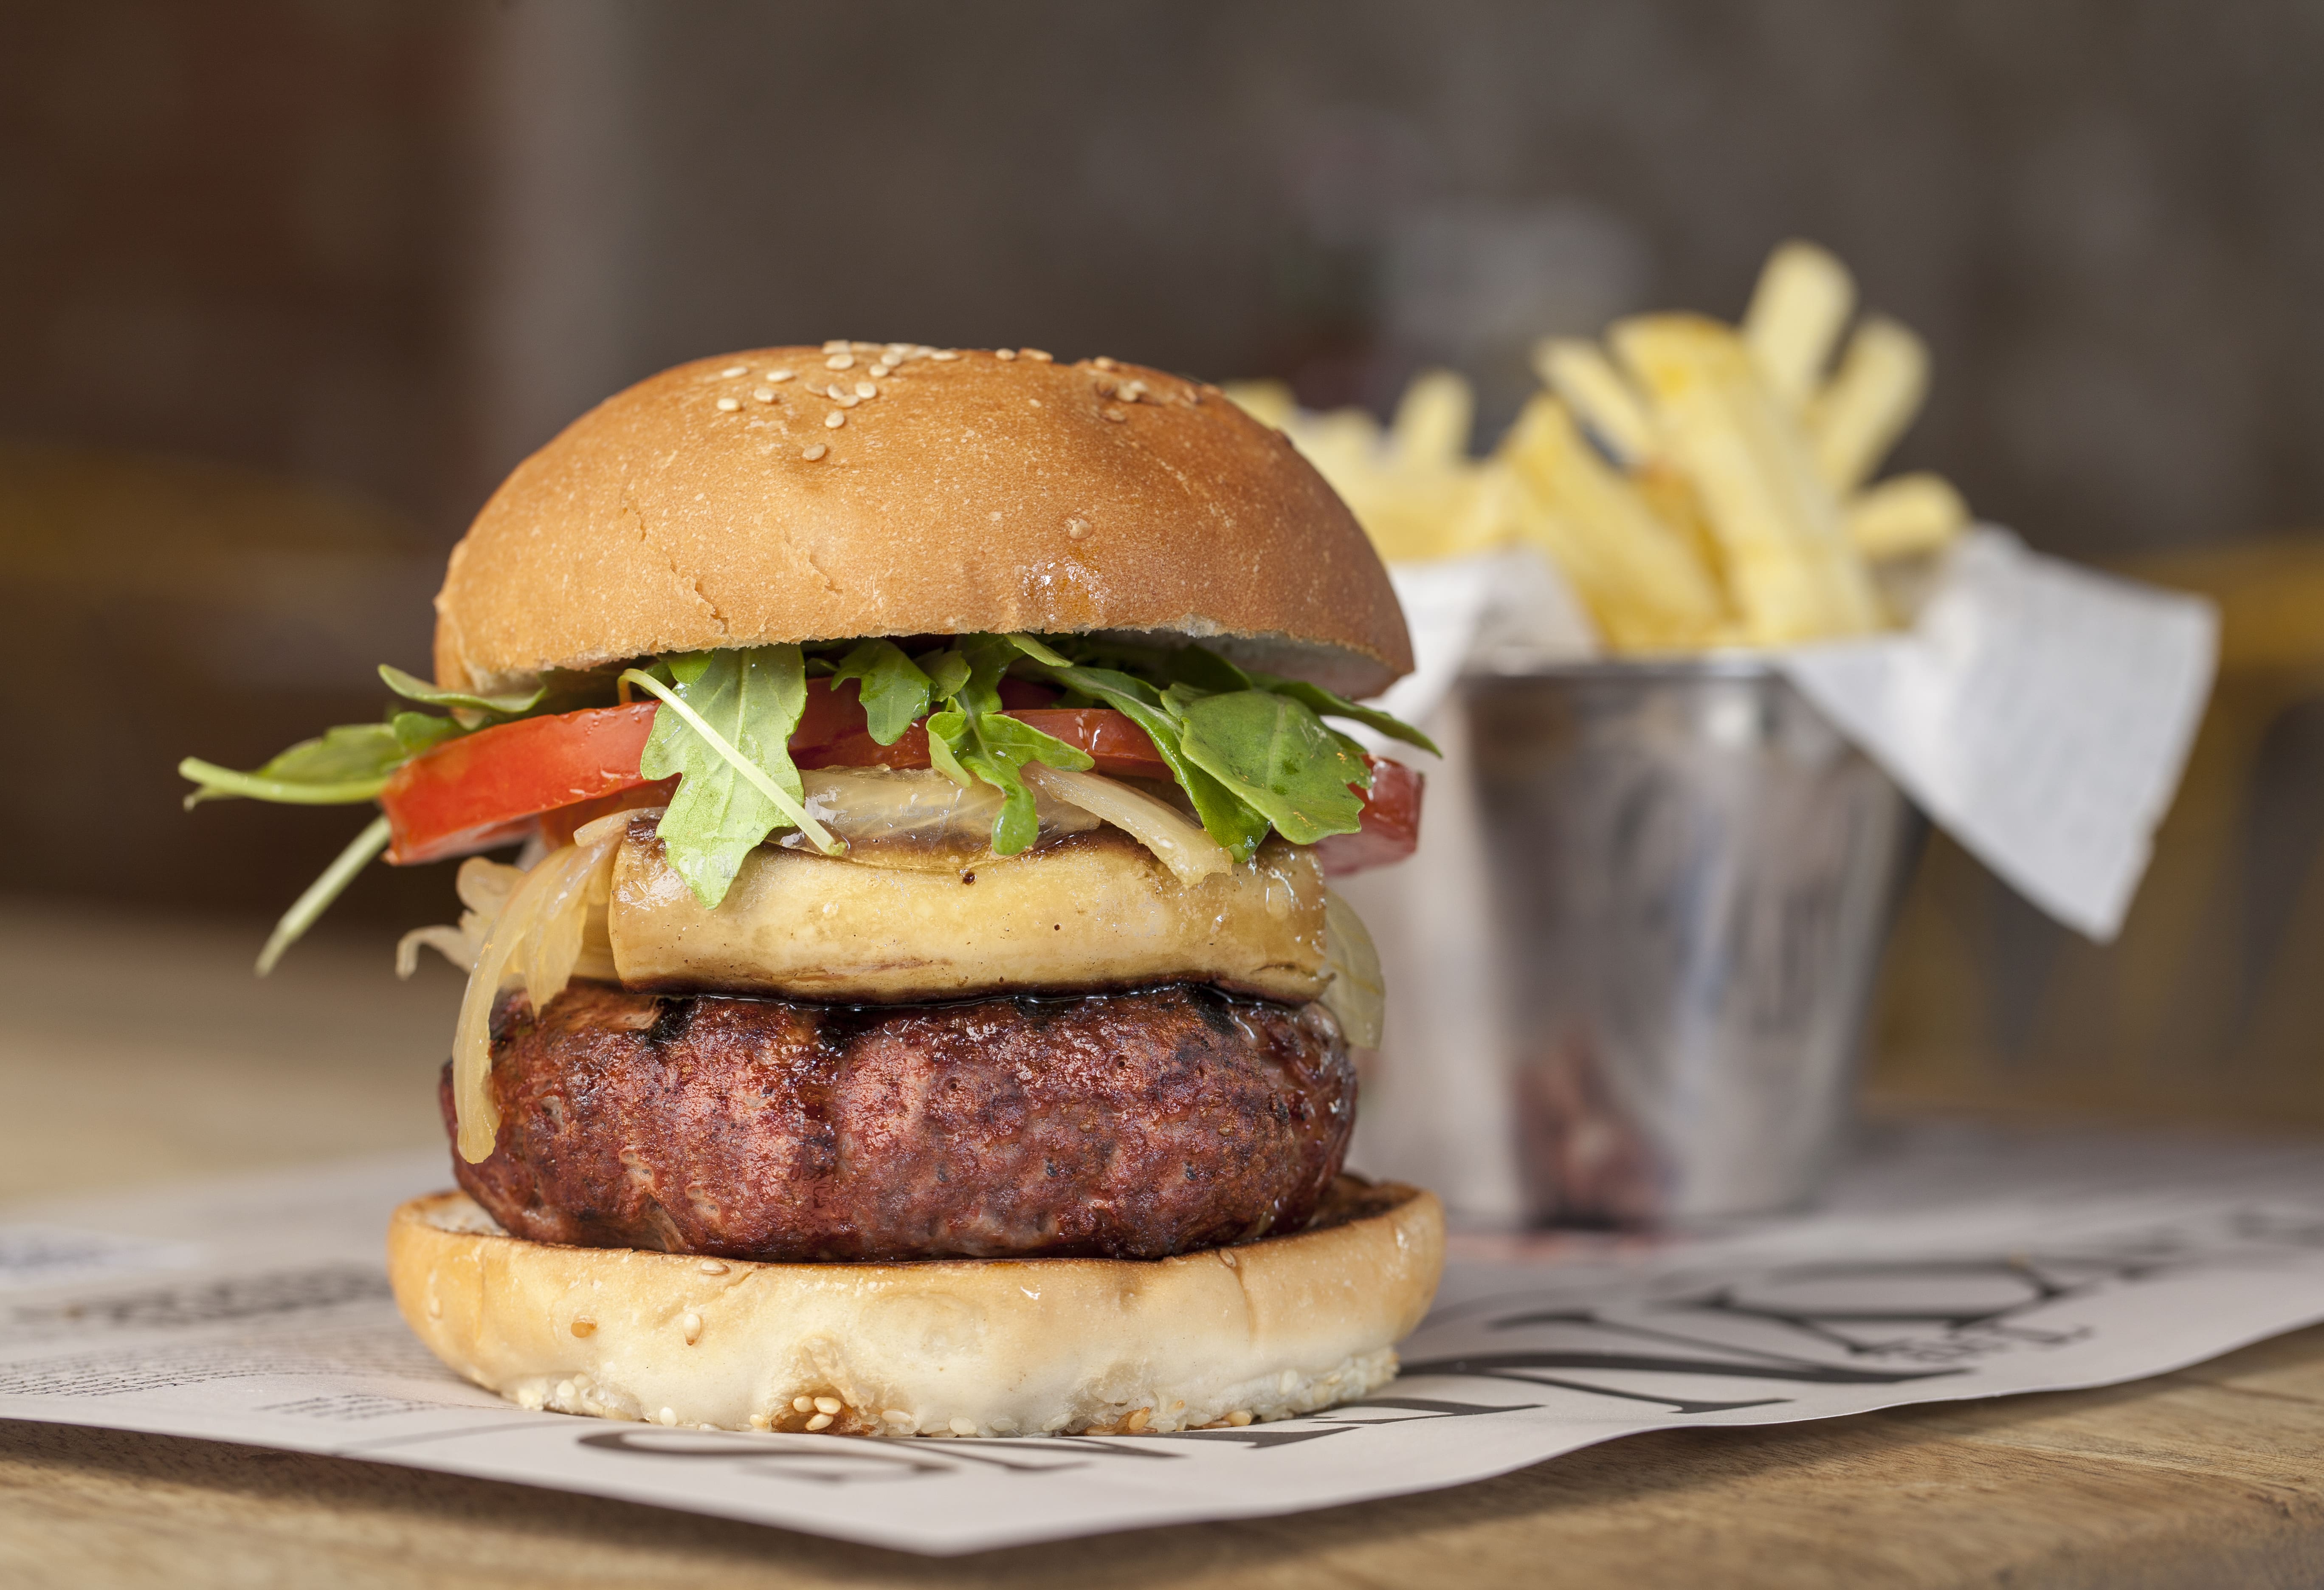 https://www.steakburger.es/wp-content/uploads/2020/02/comida-americana-protagonismo-de-la-hamburguesa.jpg